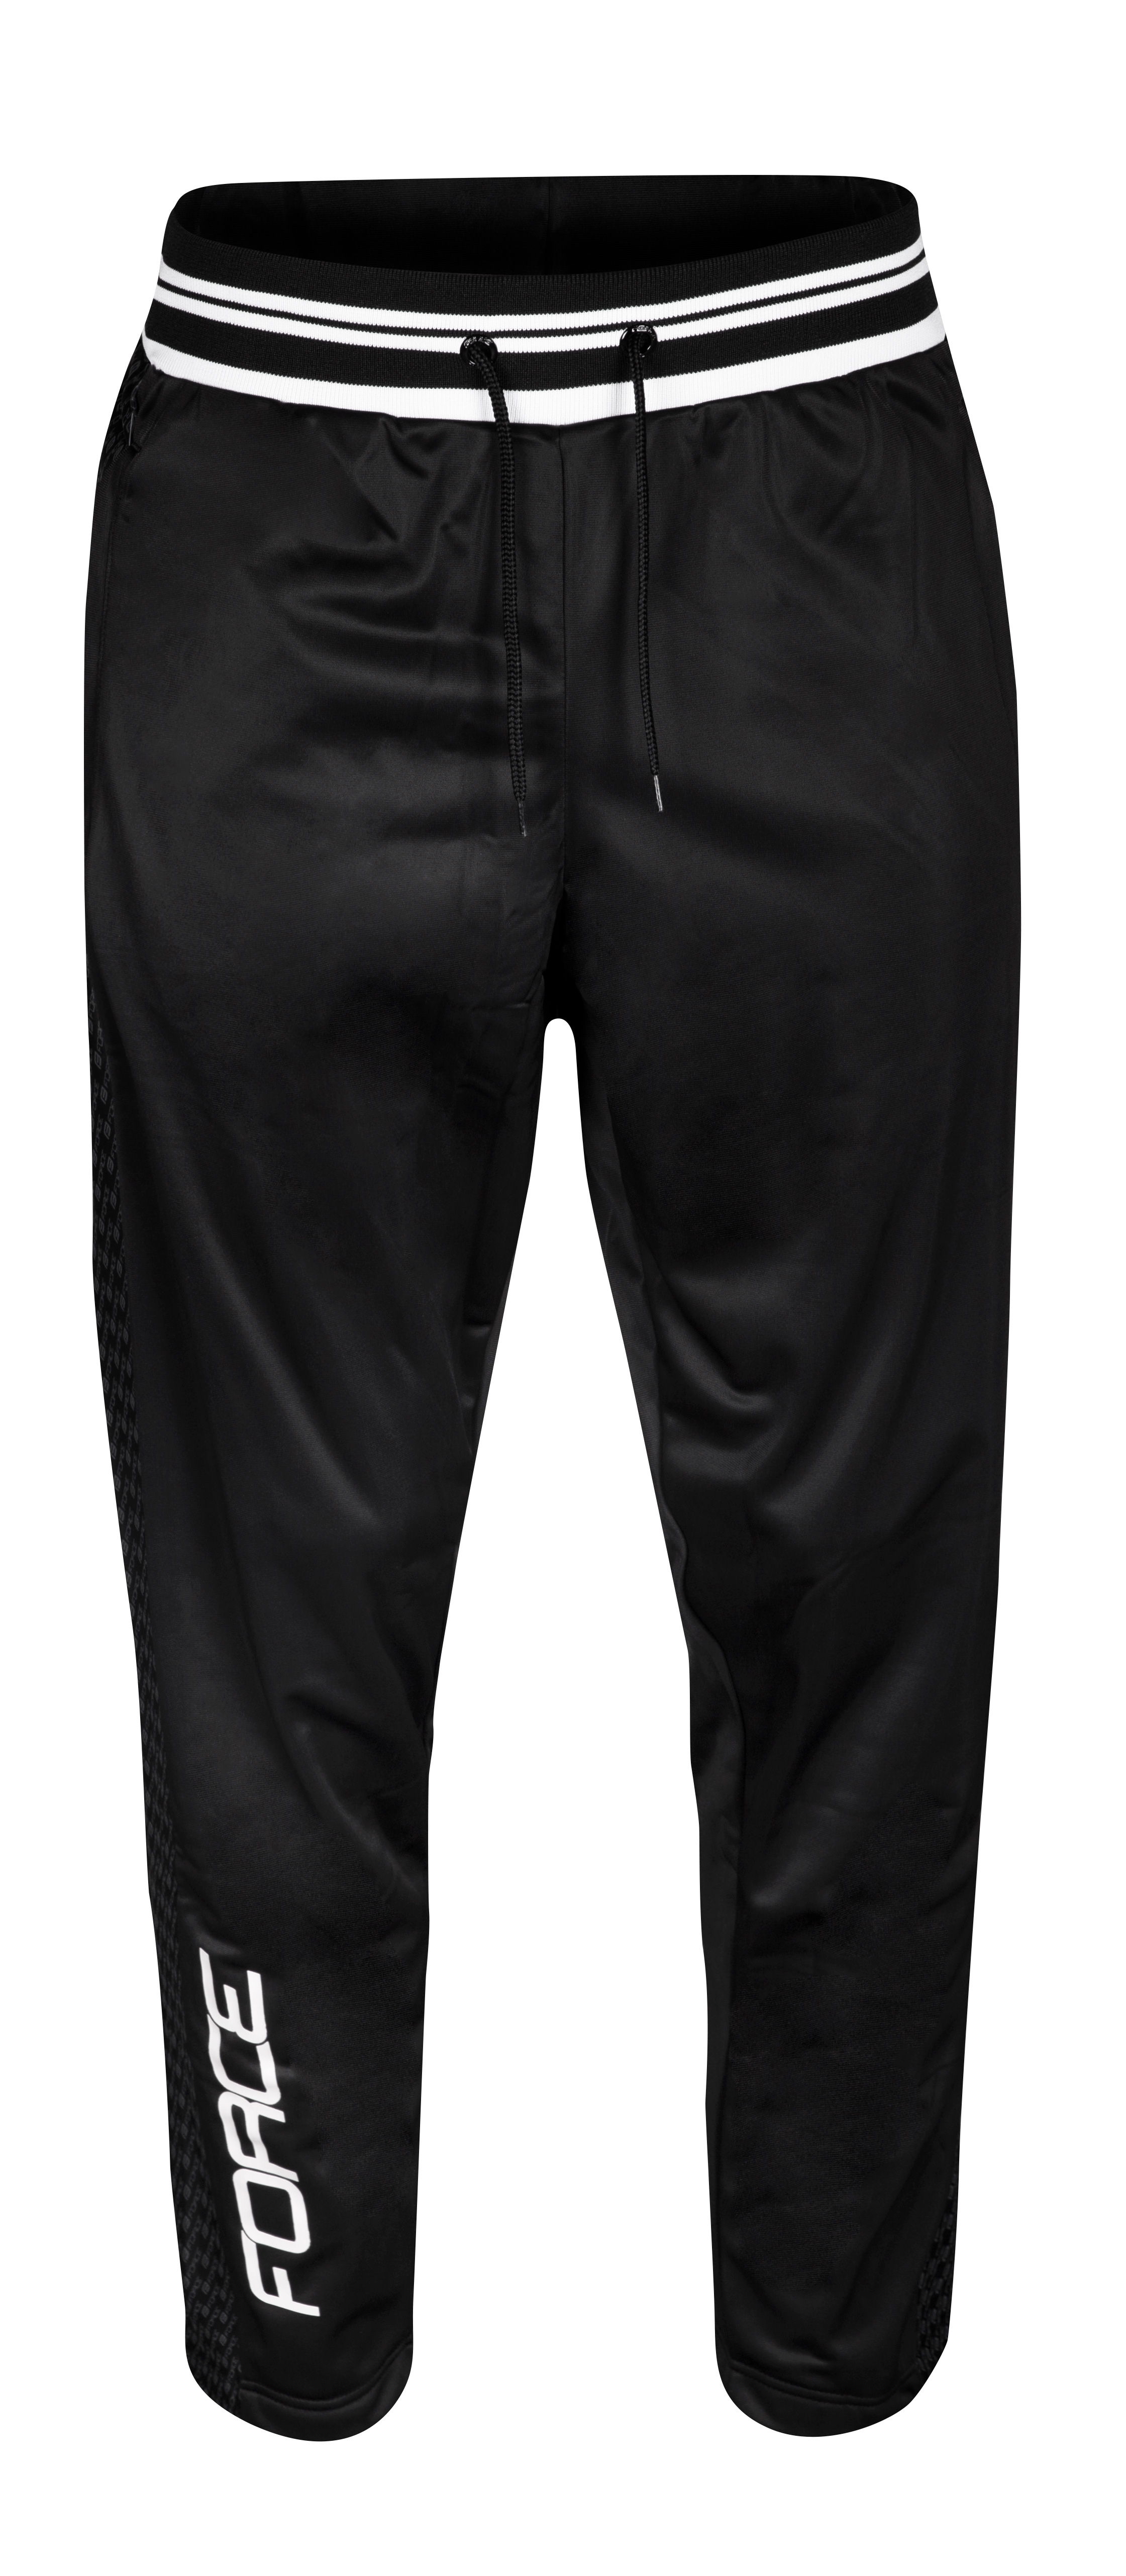 kalhoty/tepláky FORCE 1991, černé